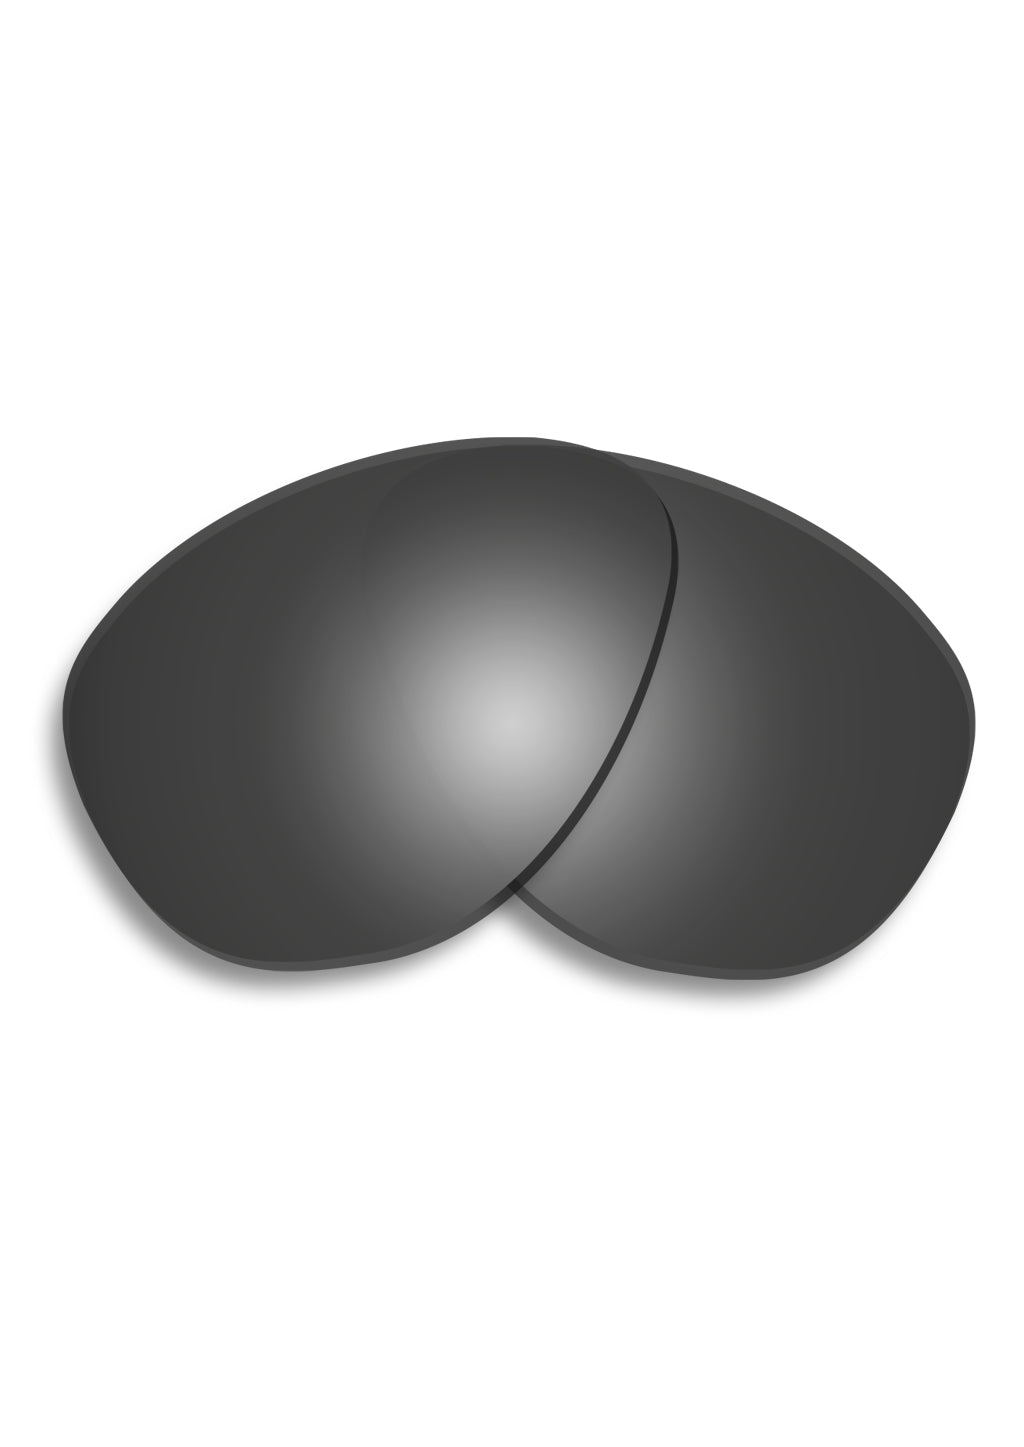 Black replacement lenses for folded aviator sunglasses